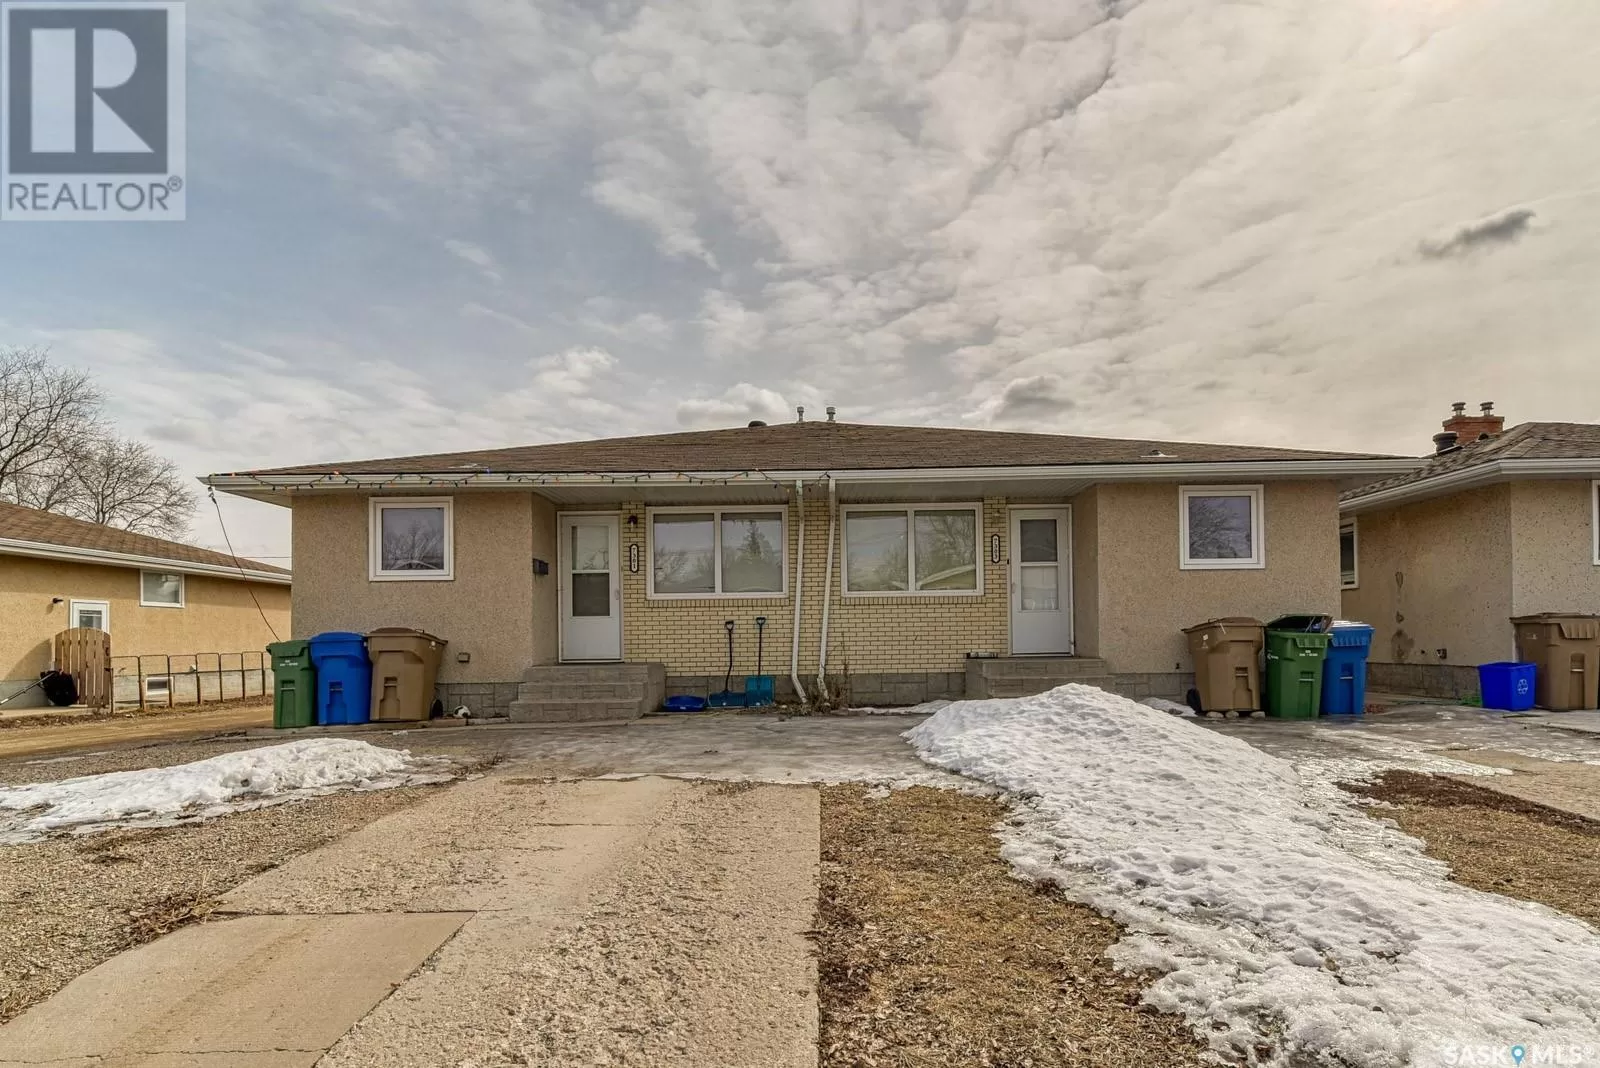 Duplex for rent: 7301-7303 Bowman Avenue, Regina, Saskatchewan S4T 6K9